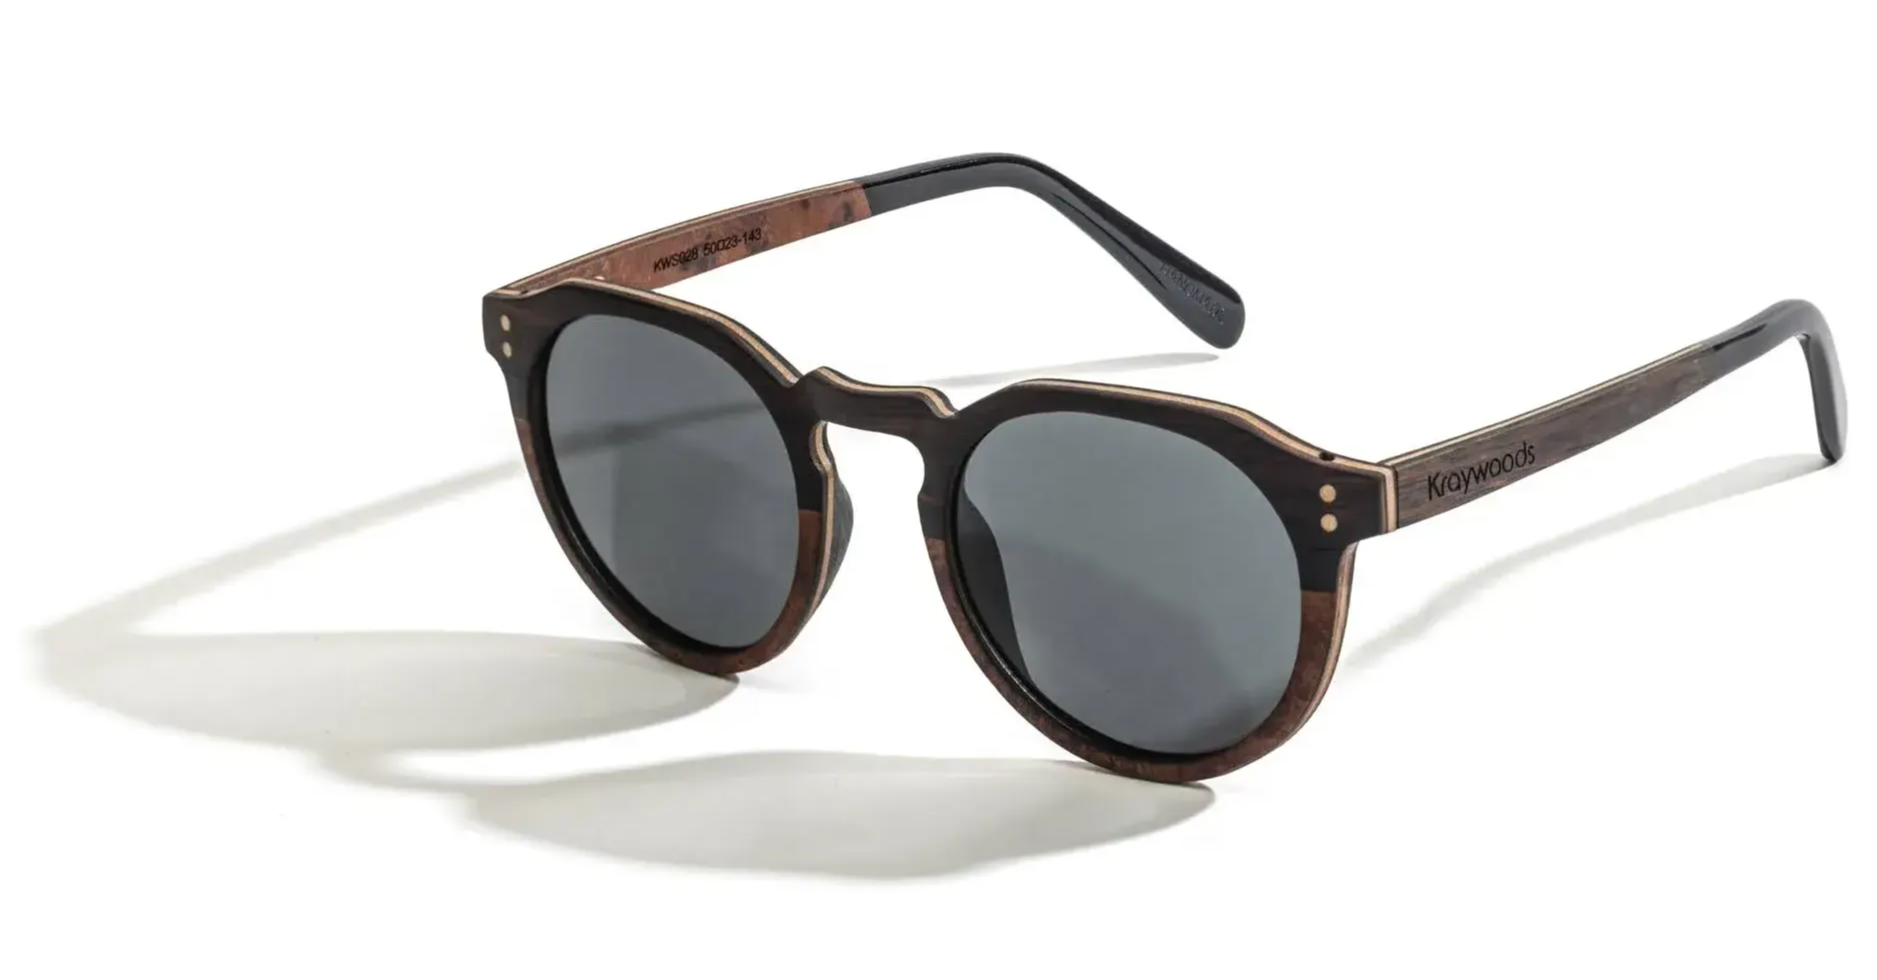 Roseland sunglasses, wooden frame sunglasses 